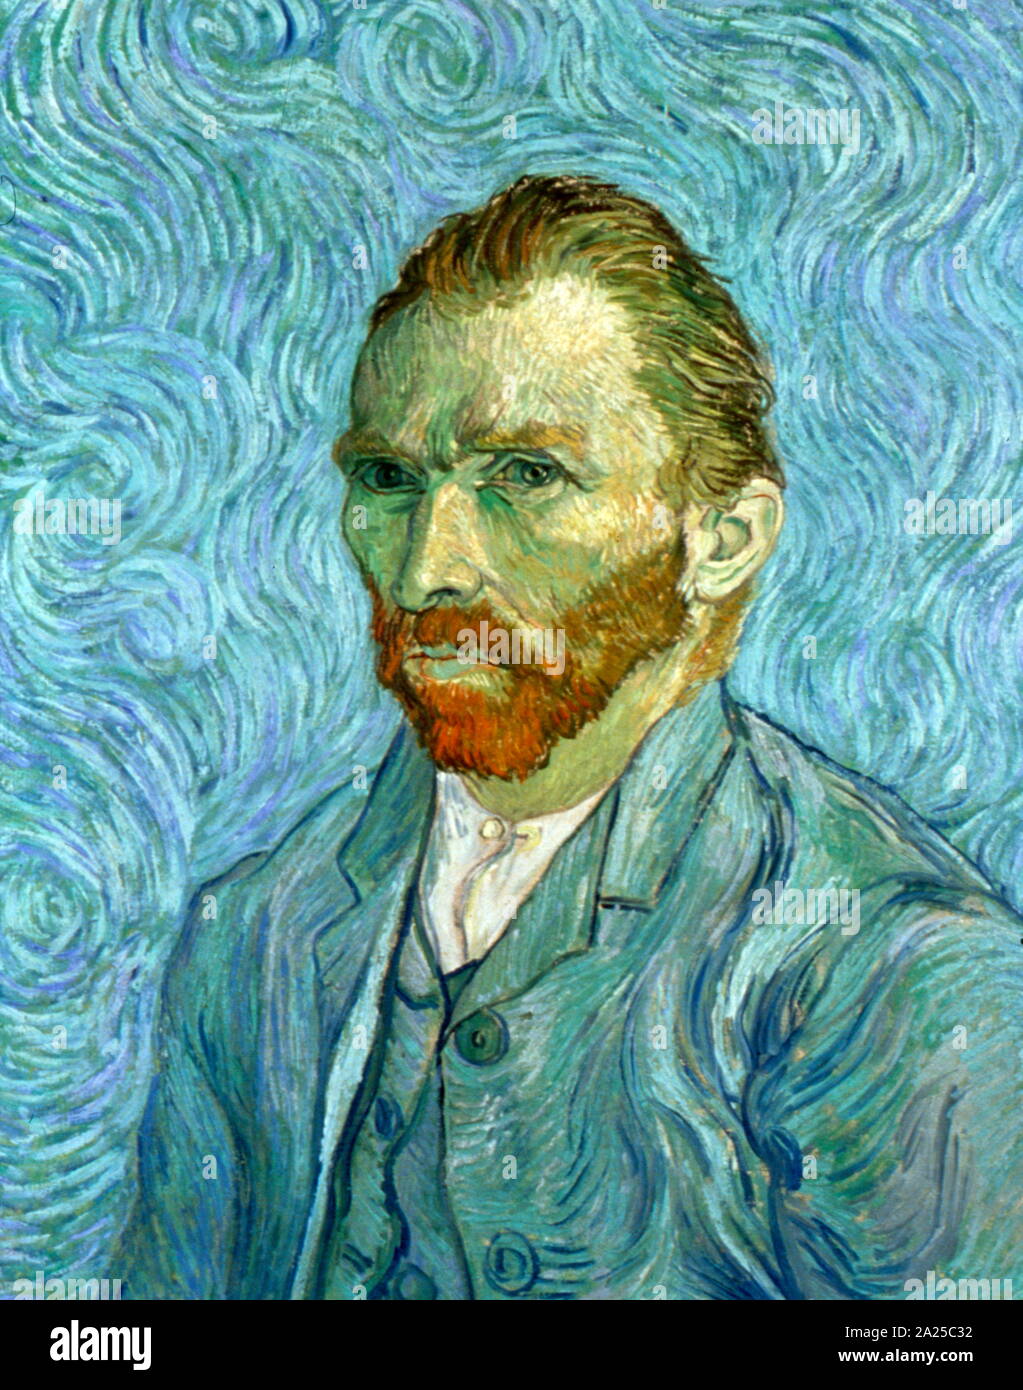 Vincent Van Gogh (1853 - 1890) Selbstbildnis Öl auf Leinwand, 1889. Stockfoto